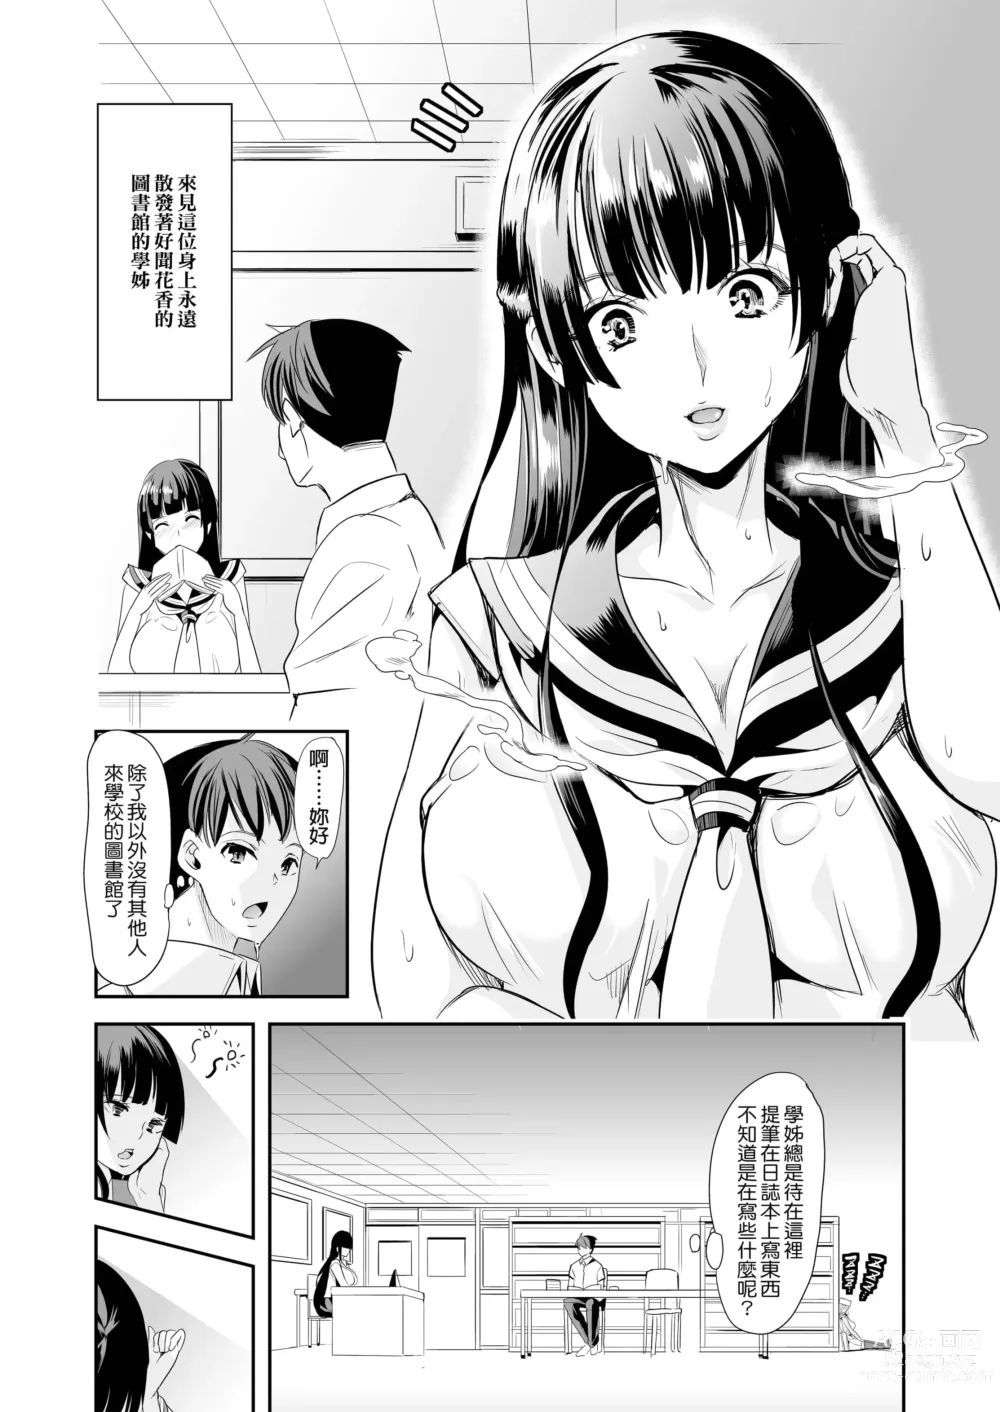 Page 7 of doujinshi ハーレムは彼女の匂い +  妻のNGが無くなっていく整合